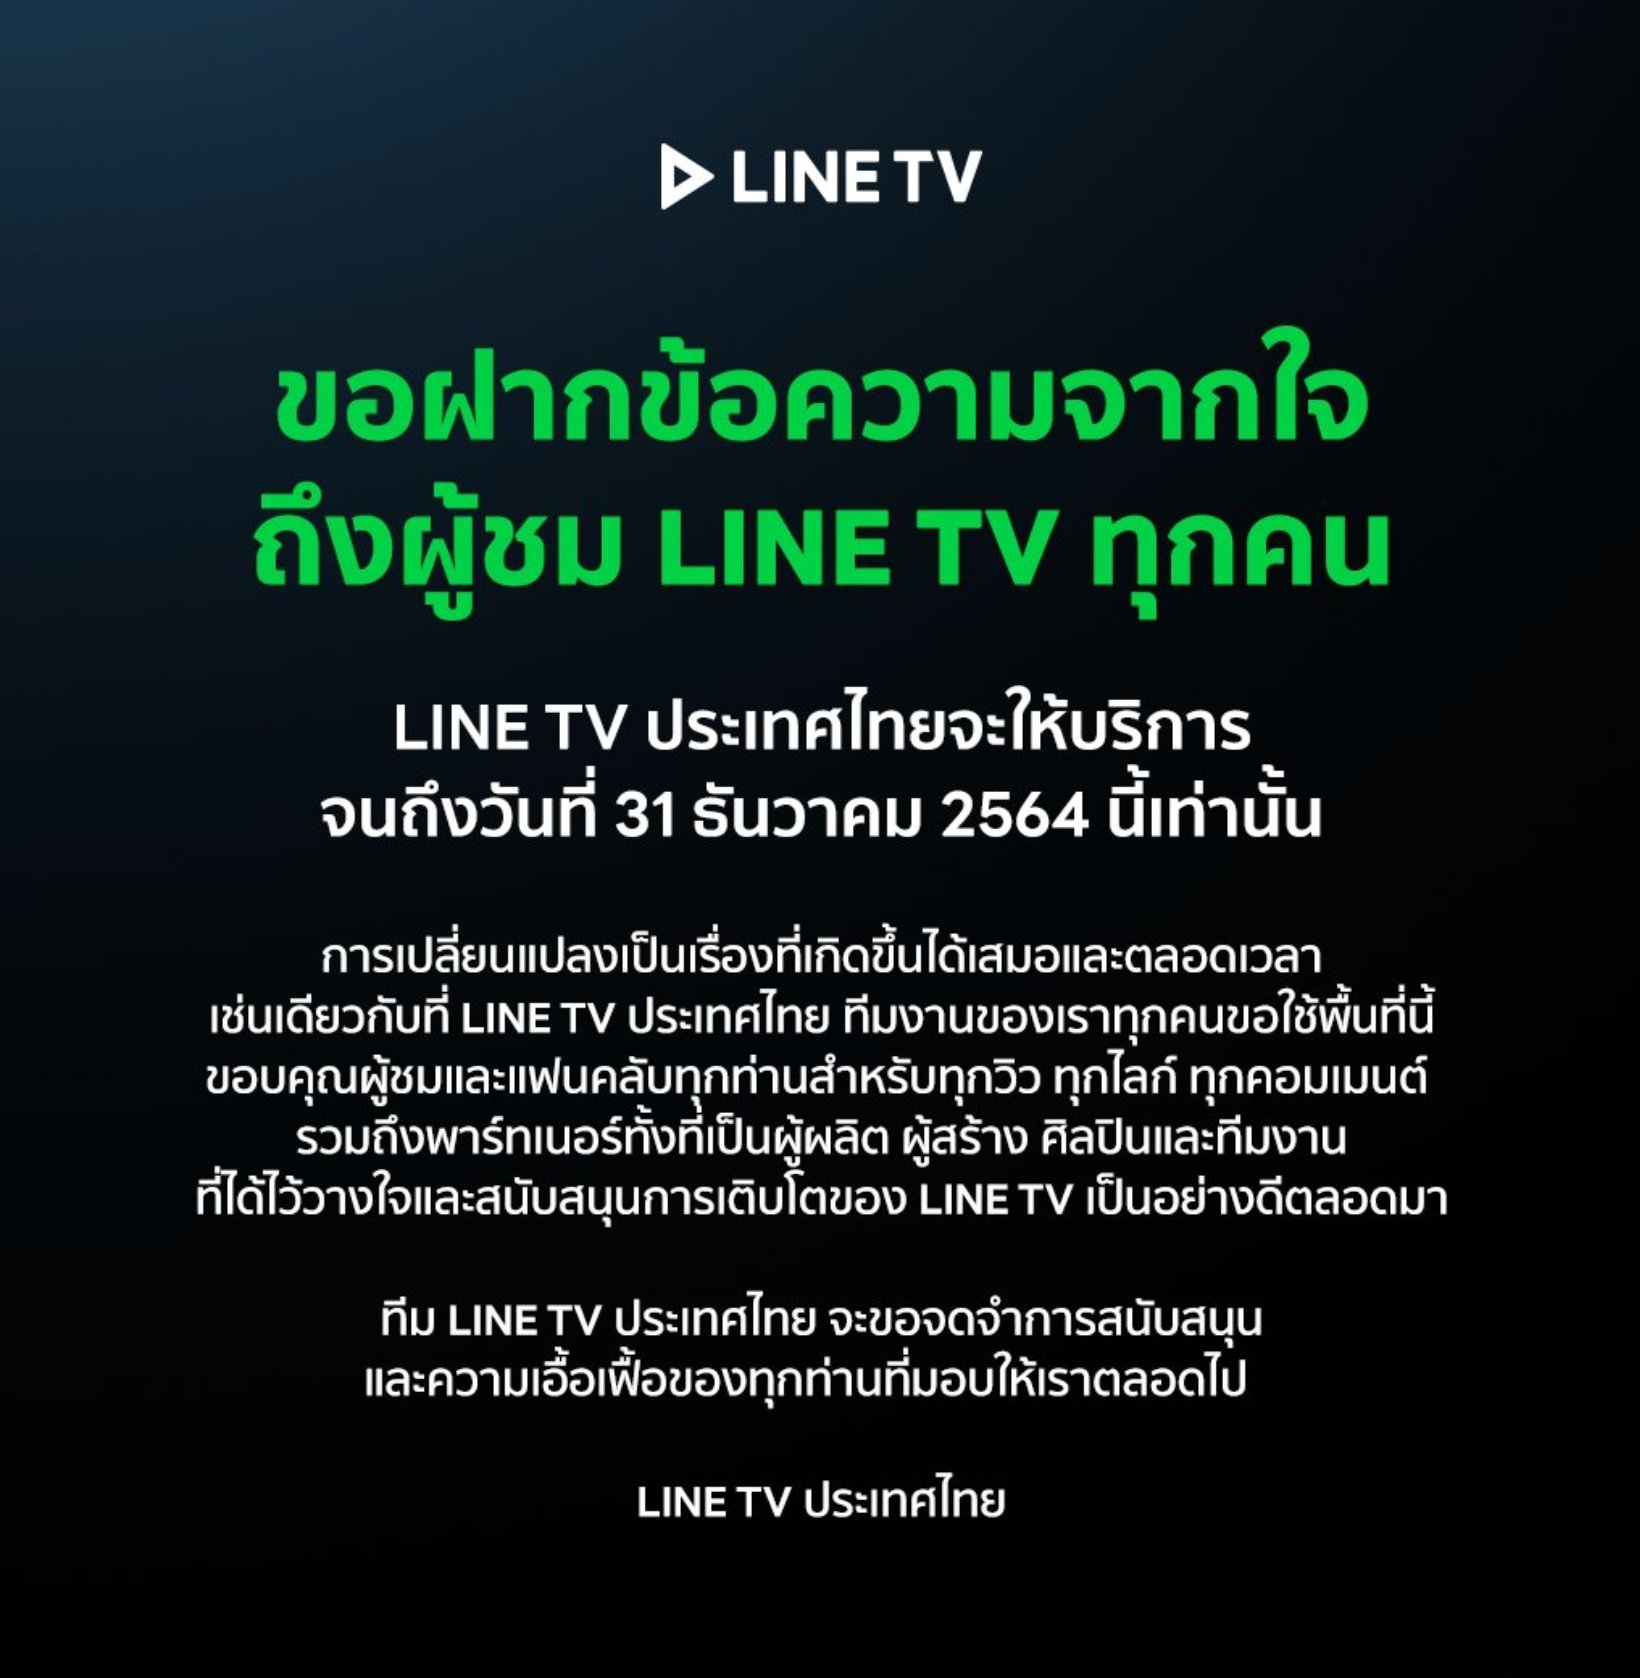 LINE TV อำลา ประกาศปิดให้บริการทุกช่องทาง ใช้งานได้ถึง 31 ธ.ค. 64 